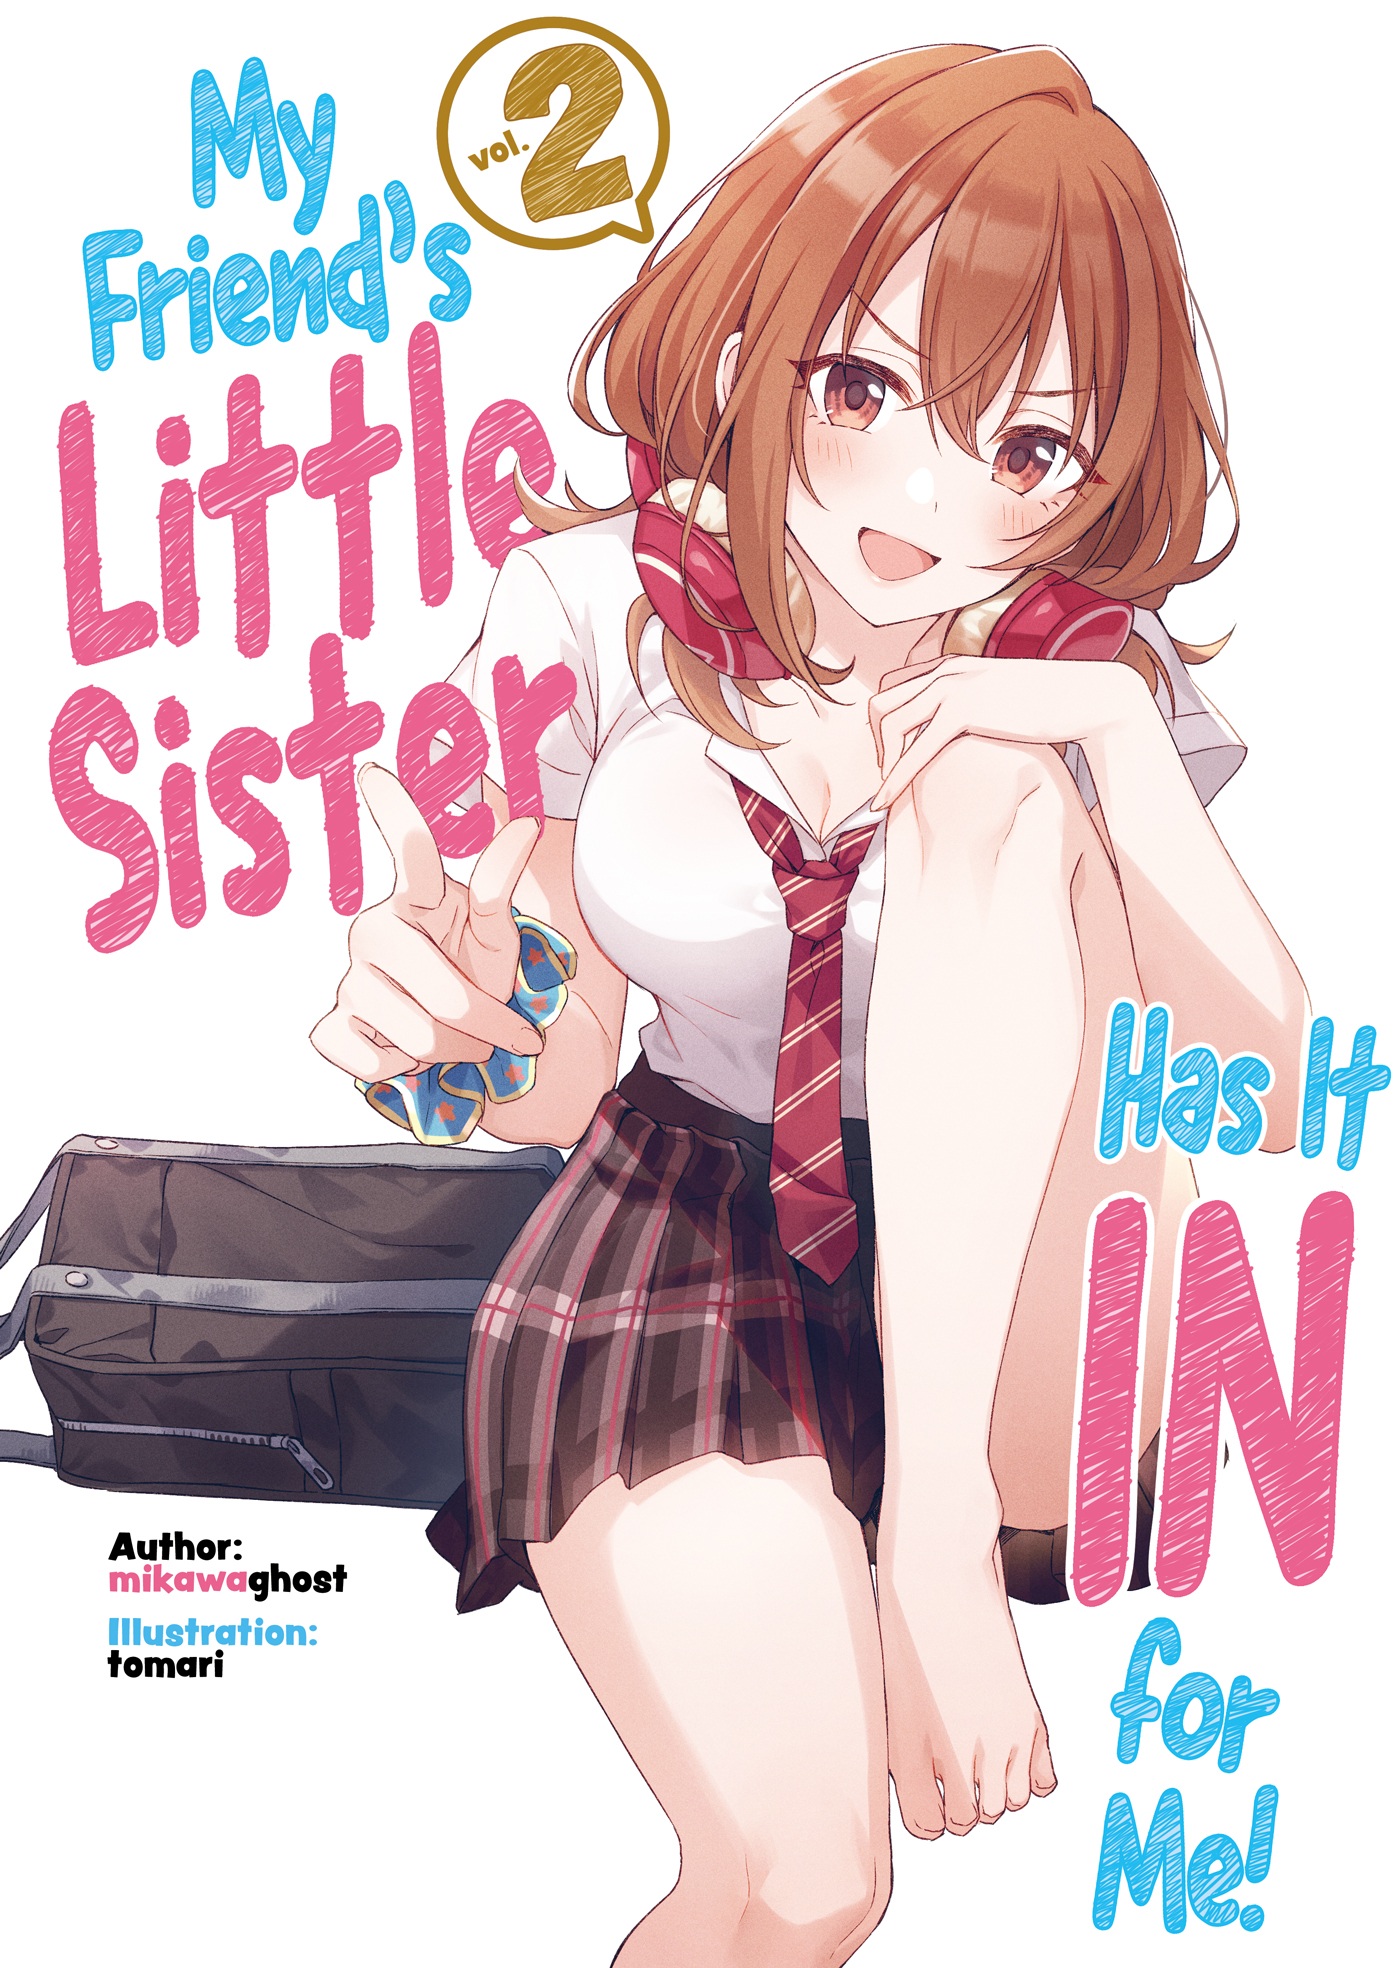 Volume 2 (Light Novel) | My Friend's Little Sister Has It In for 